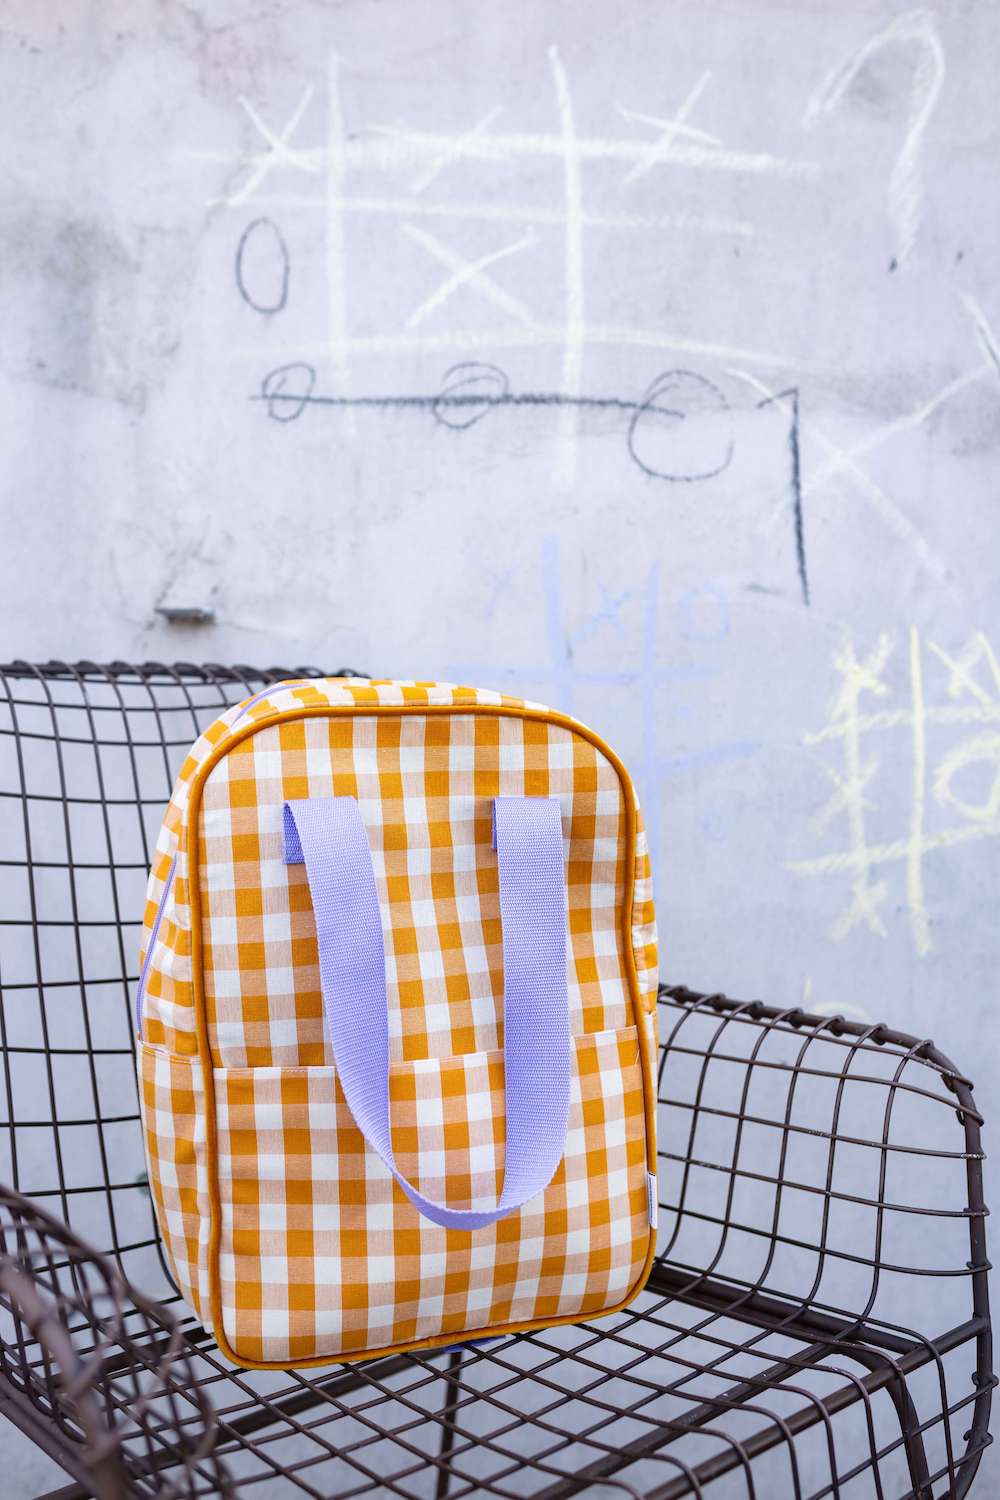 żółty plecak w kratkę z fioletowymi paskami od Bettys Home stojący na krześle na dworze. plecak do szkoły dla nastolatków